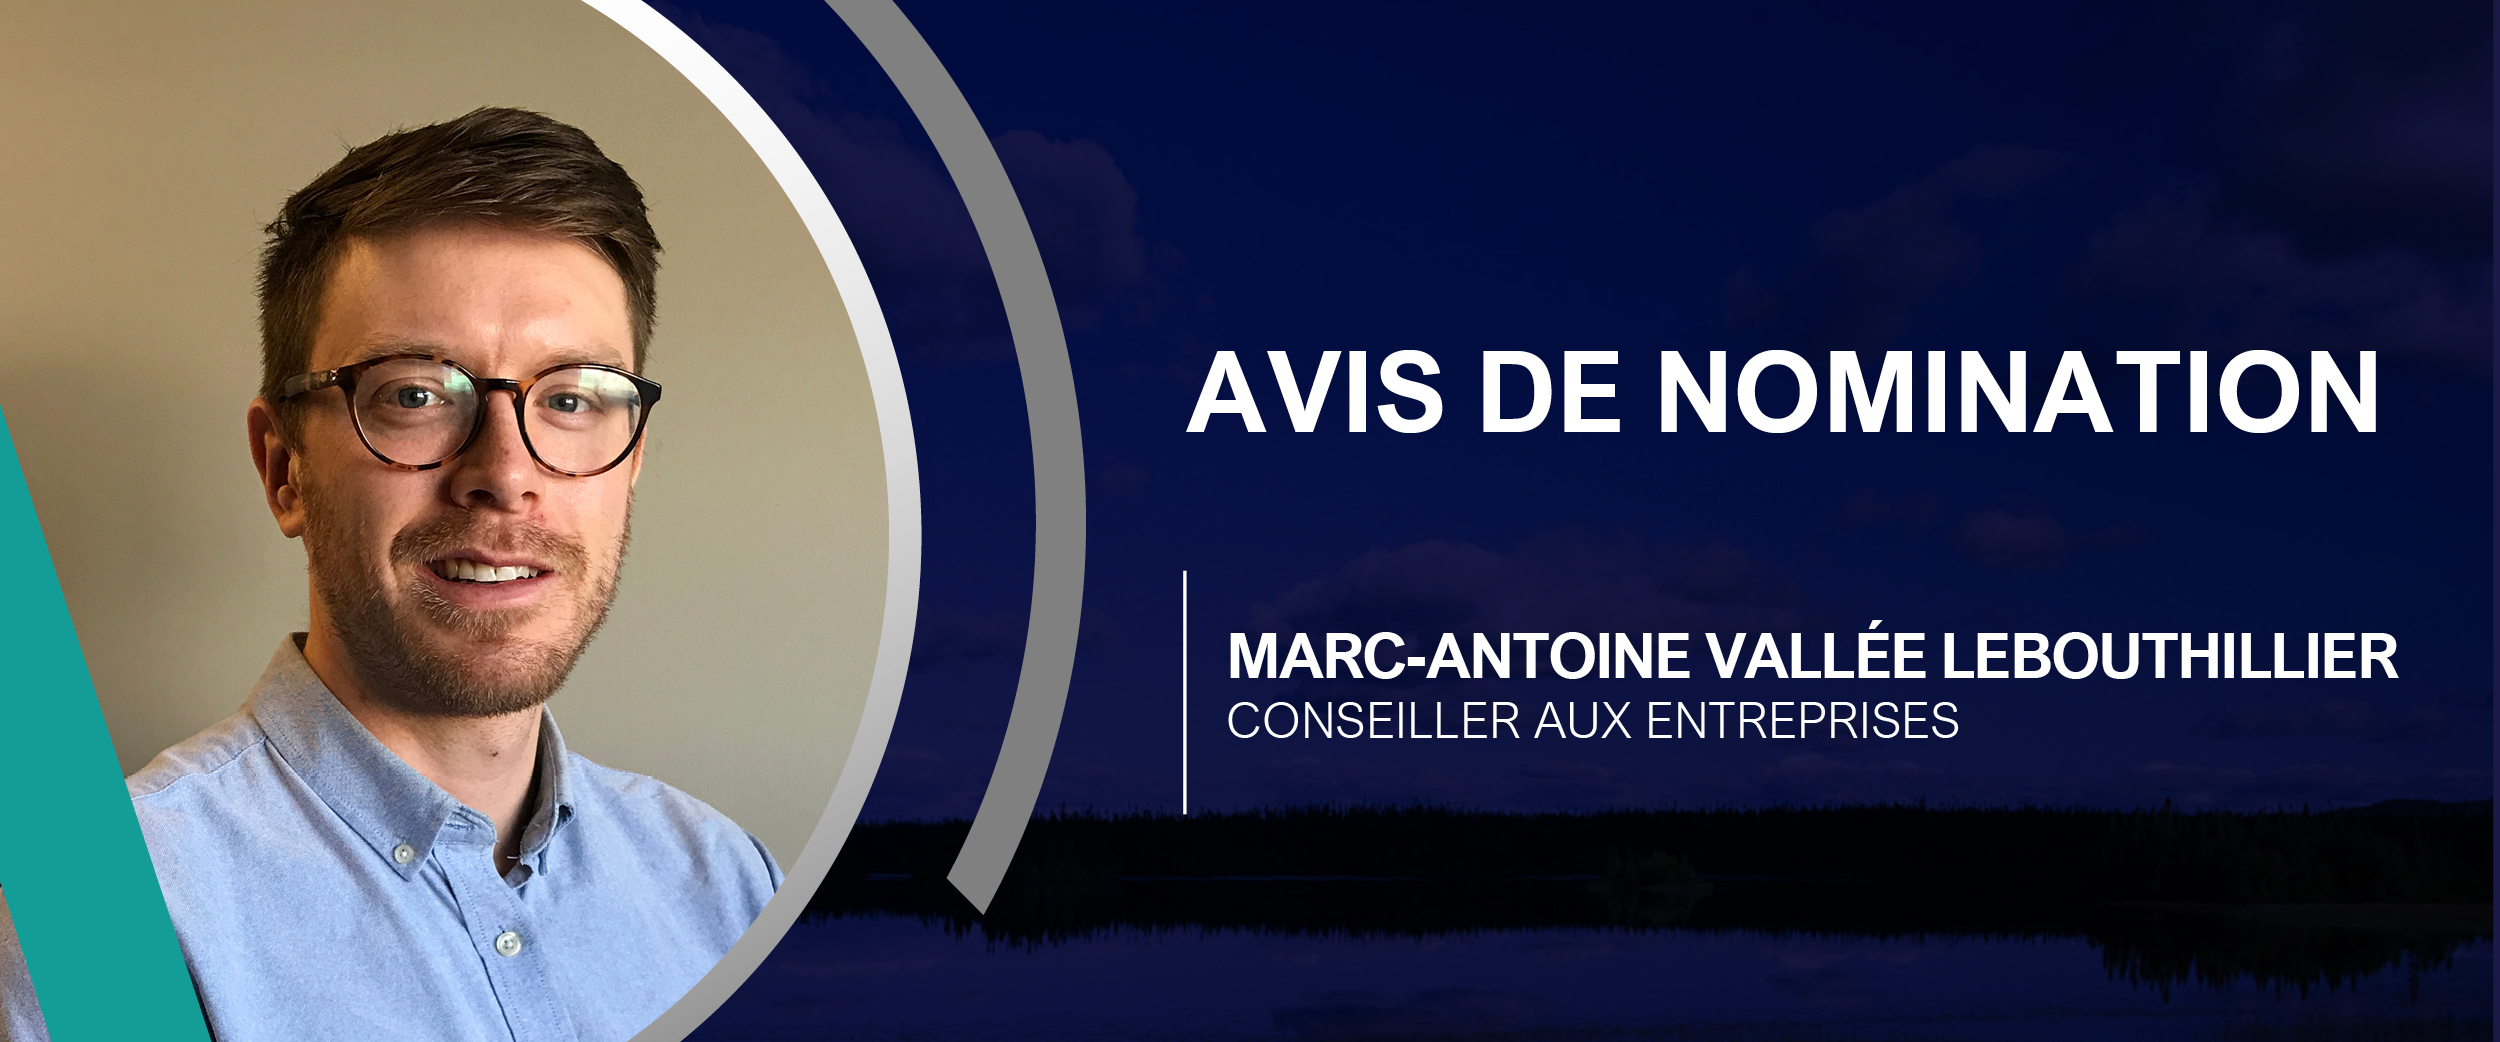 Avis de nomination de Marc-Antoine Vallée Lebouthillier